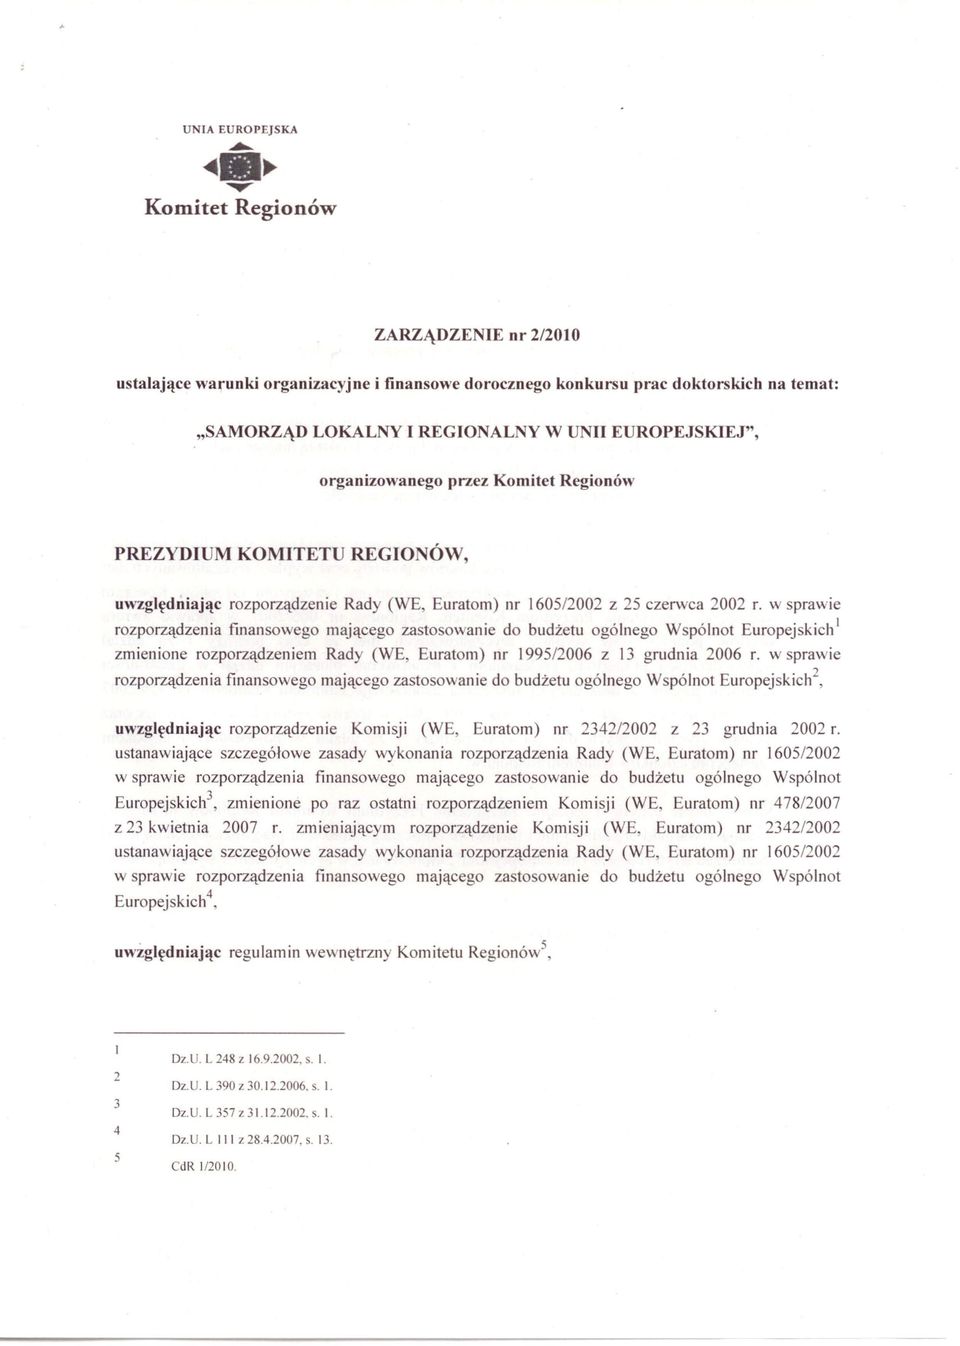 organizowanego przez Komitet Regionów PREZYDIUM KOMITET REGIO ÓW, uwzględniając rozporządzenie Rady (WE, Euratom) nr 1605/2002 z 25 czerwca 2002 r.